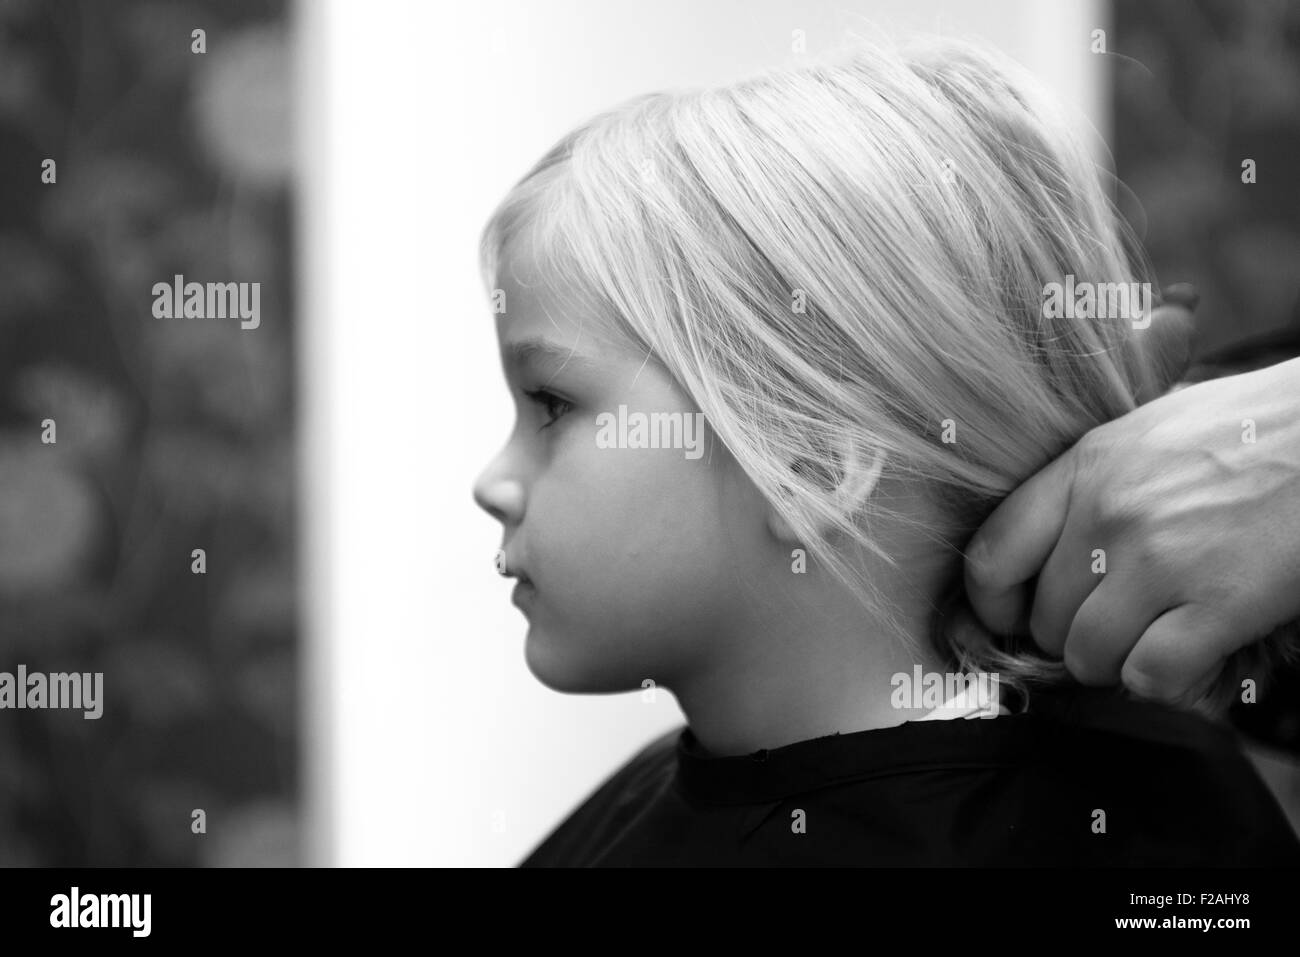 Coupe Coiffure féminine et le brossage du jeune enfant fille blonde cheveux dans le salon de coiffure Banque D'Images